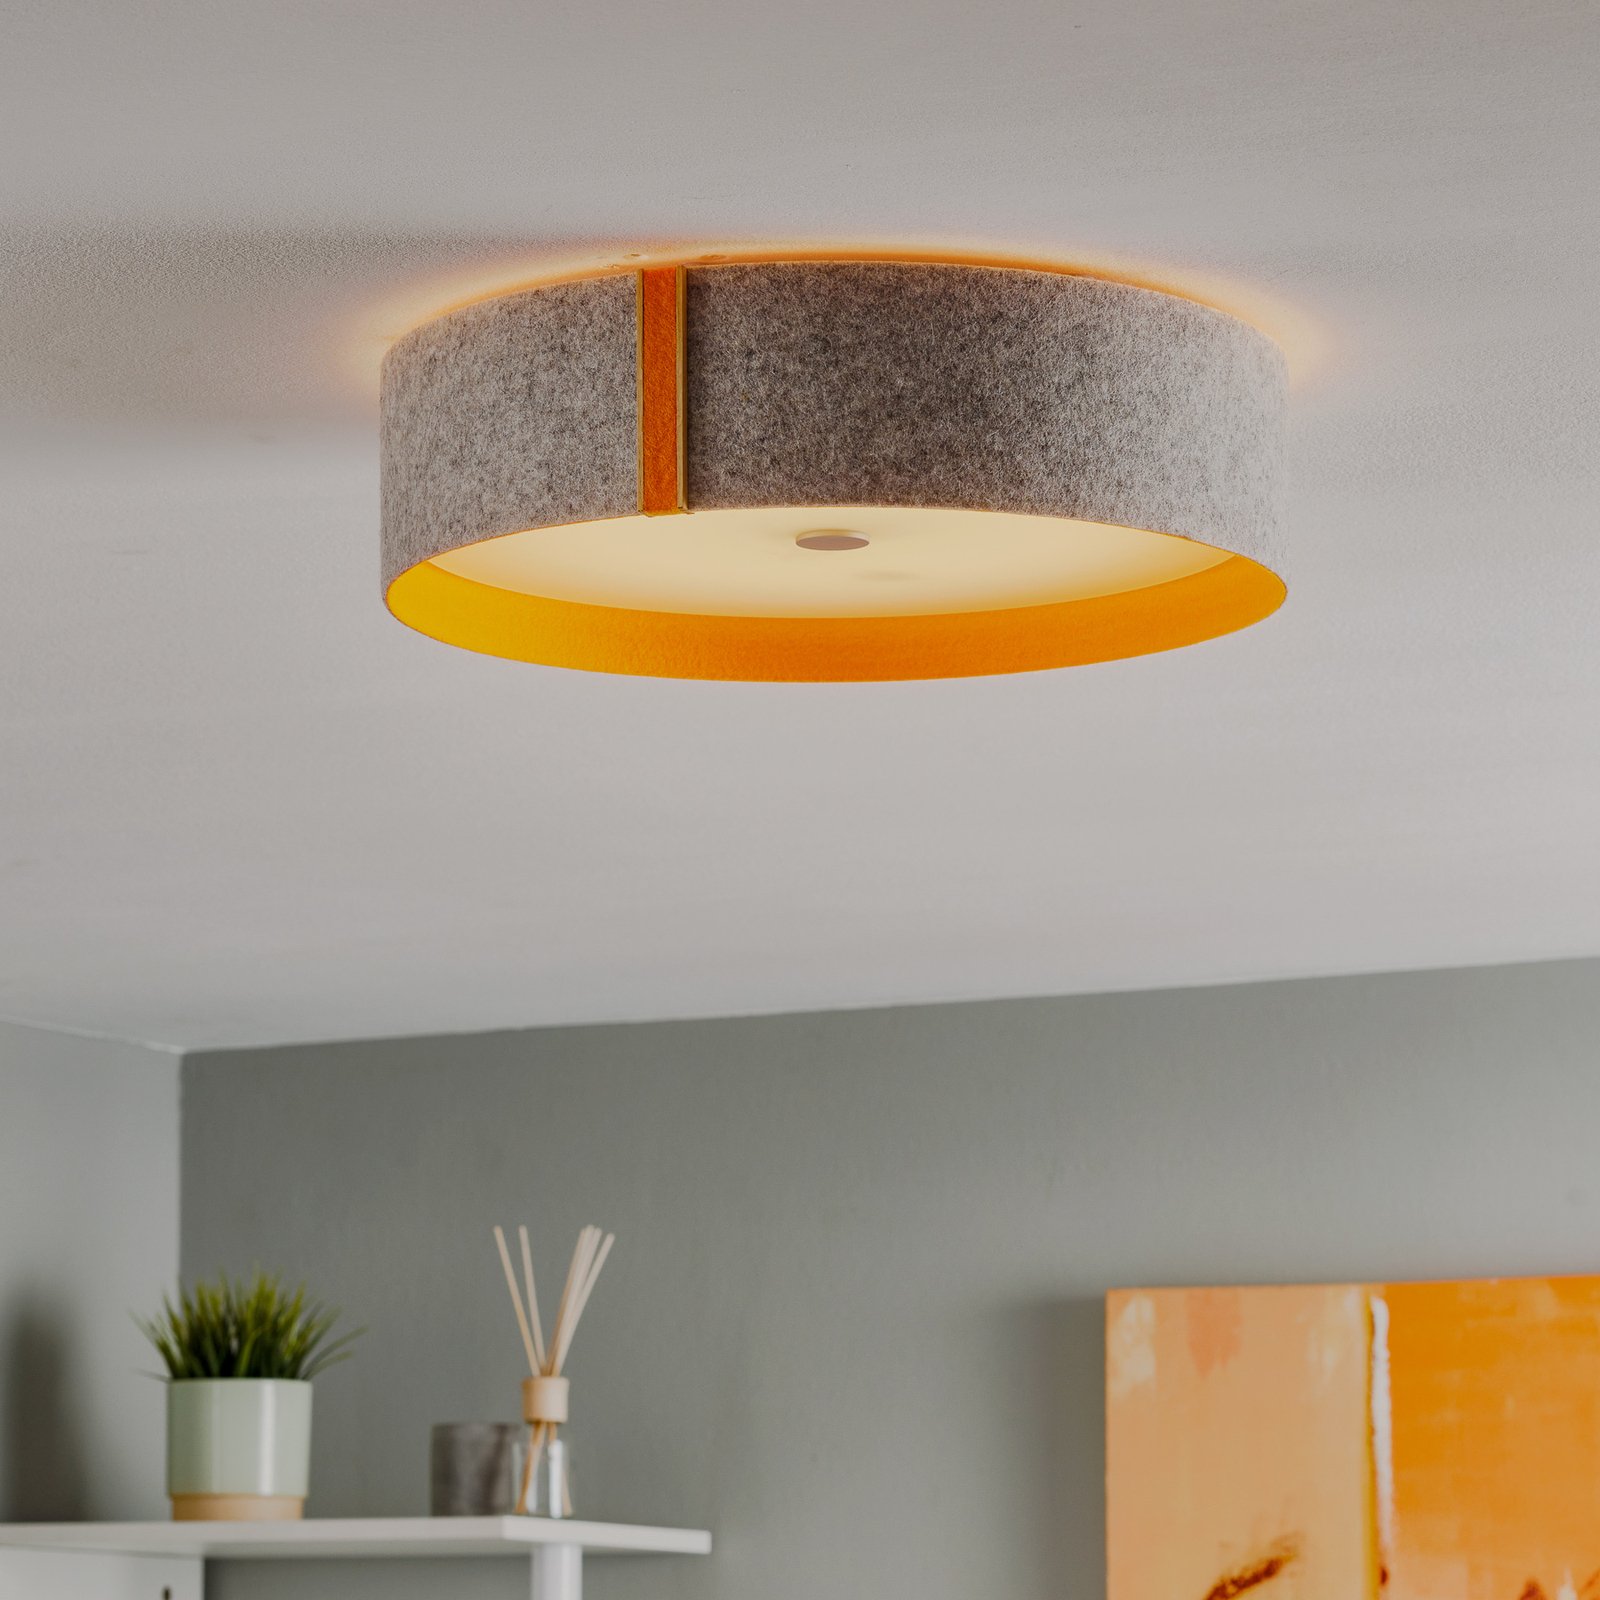 Lara felt – taklampe i filt med LED, grå, oransje